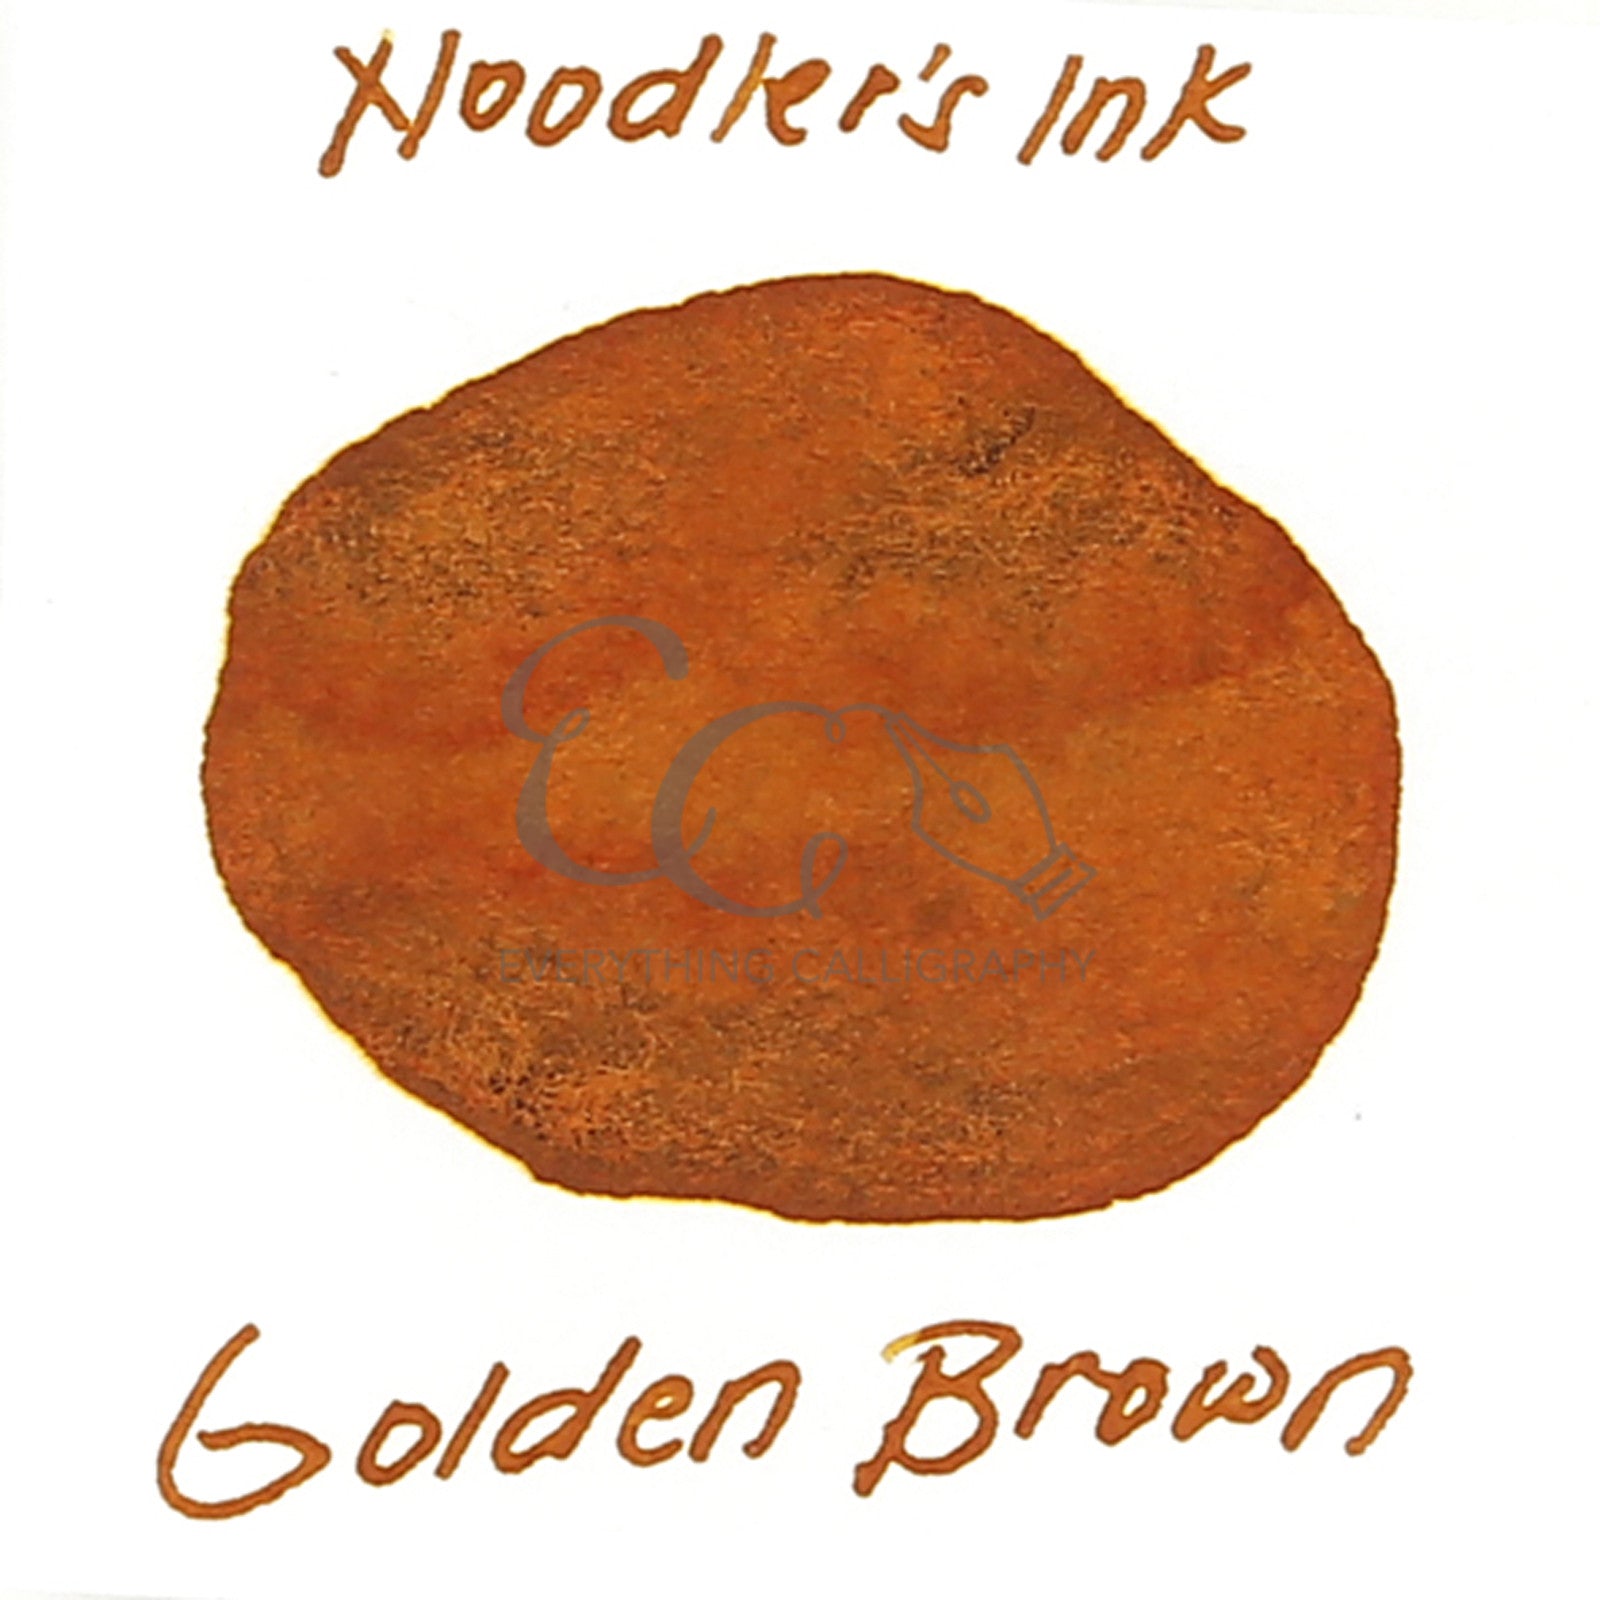 Noodler's Ink Sample Vials